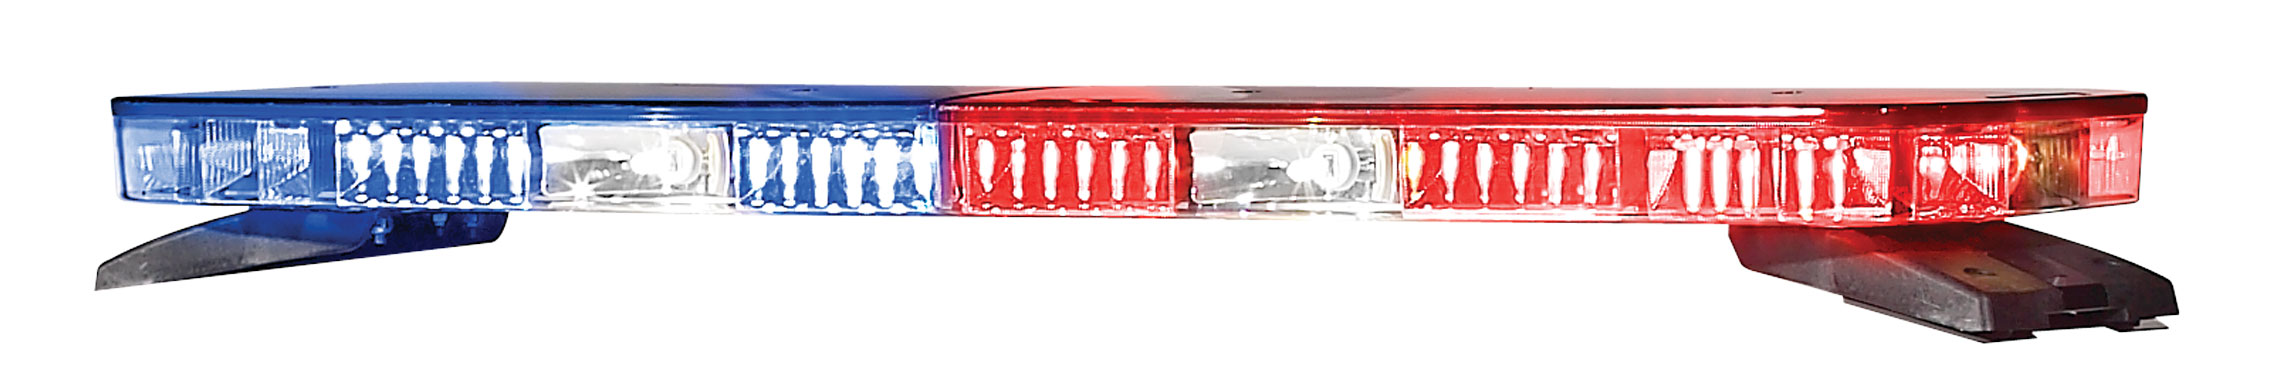 Police Legend light bar